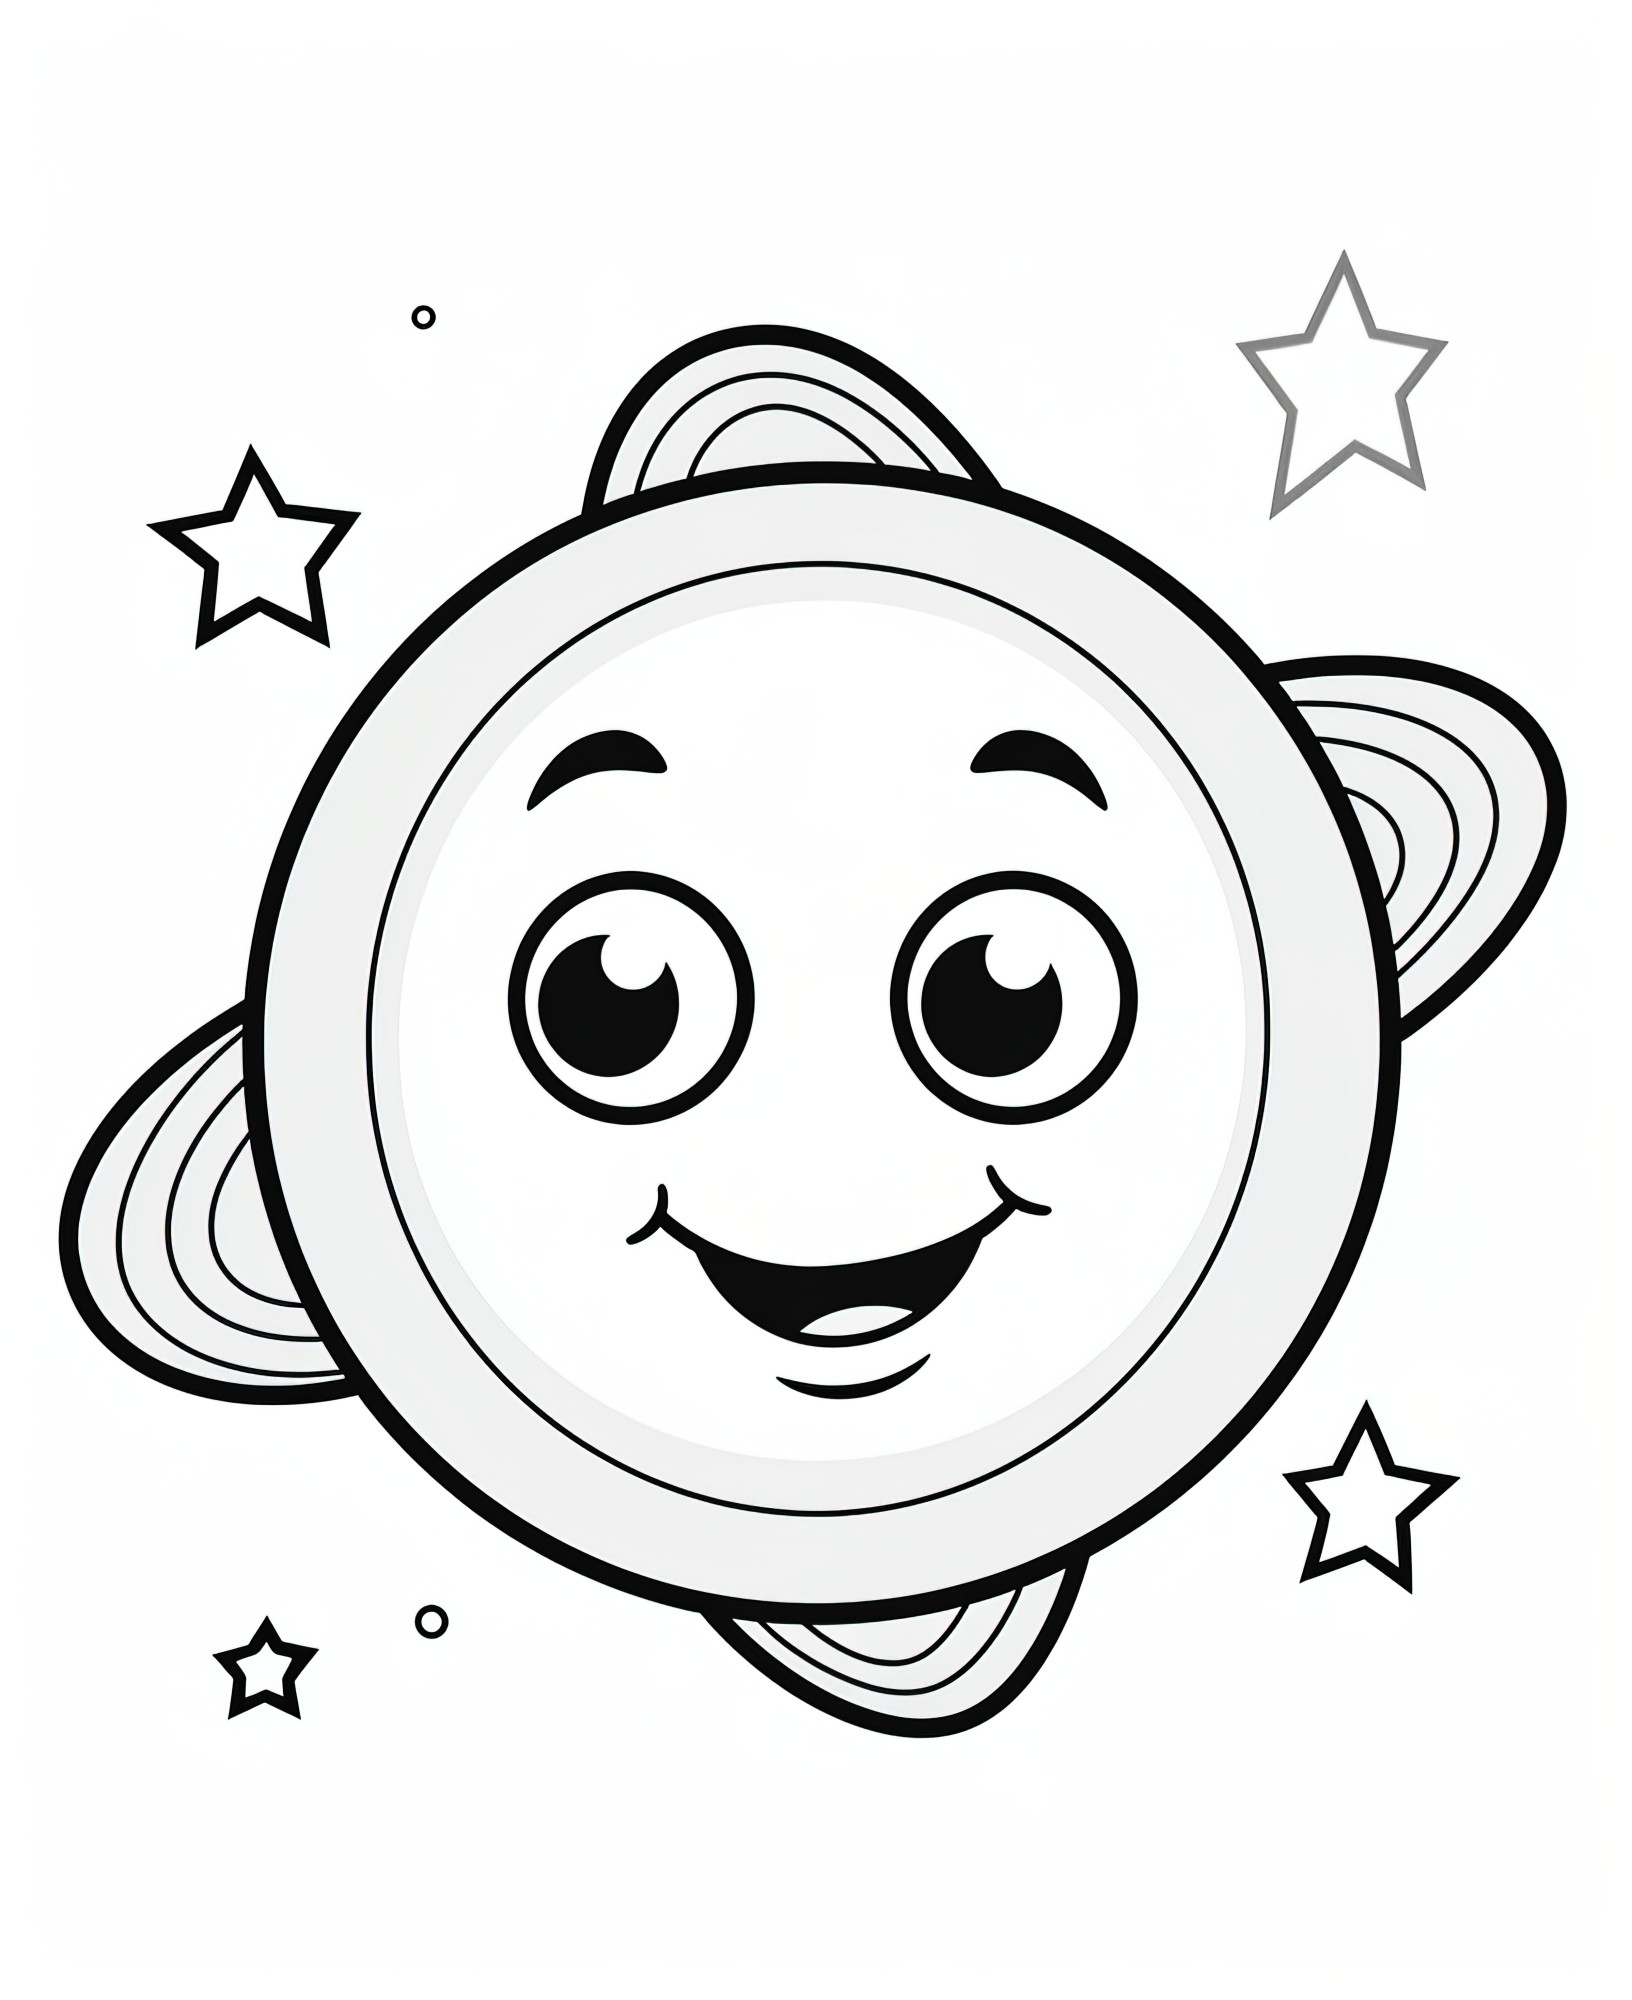 Раскраска для детей: смайлик планета с глазами